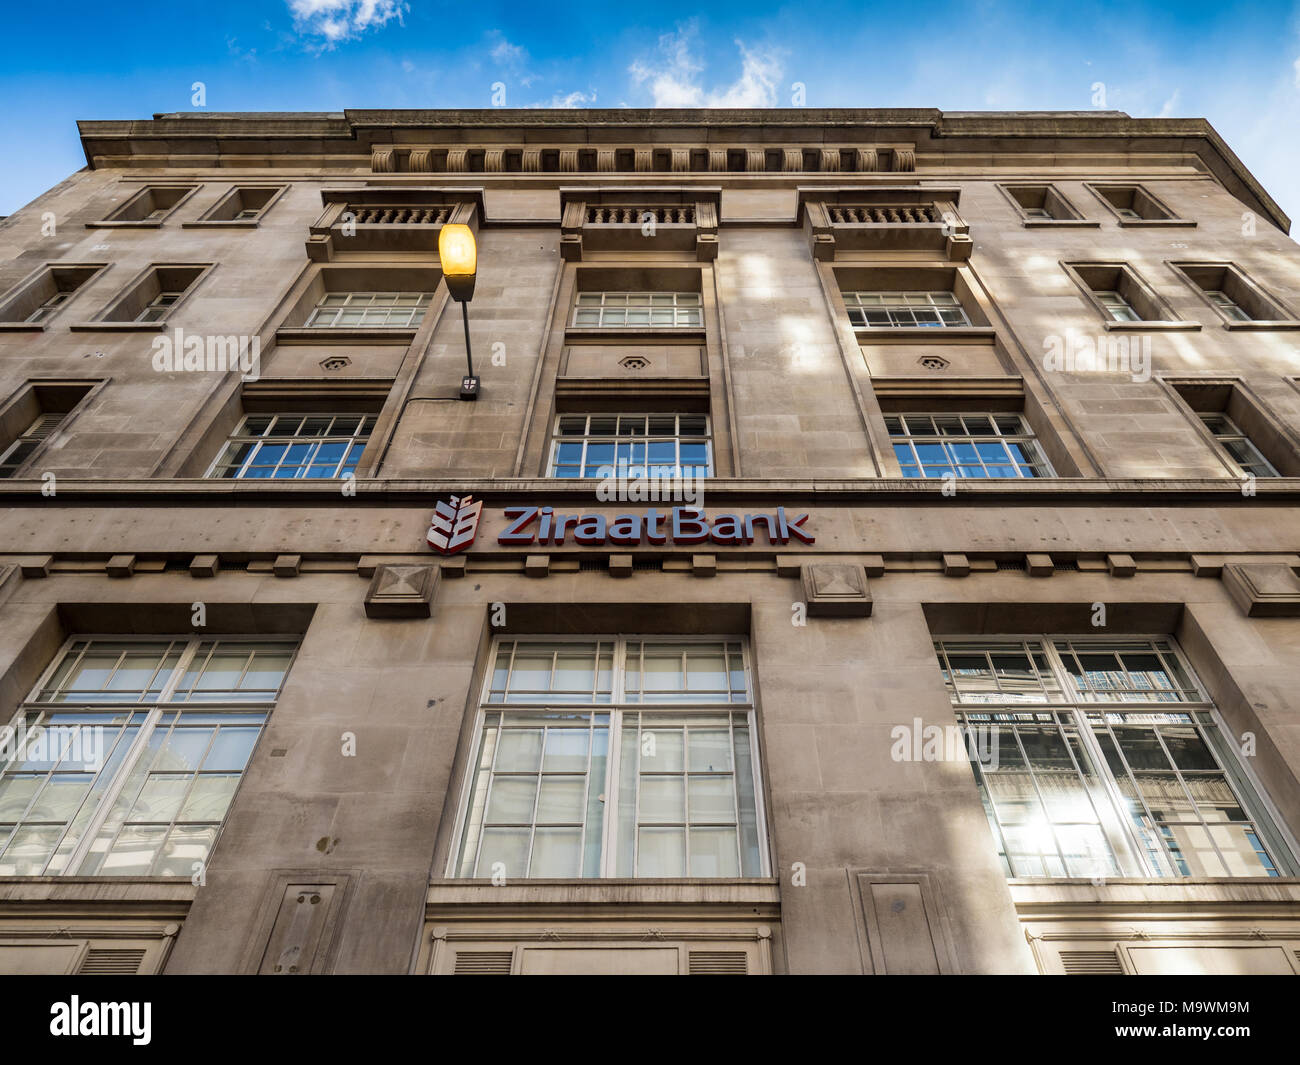 Ziraat oficinas bancarias en la ciudad de Londres, el London's Square Mile Distrito Financiero Foto de stock